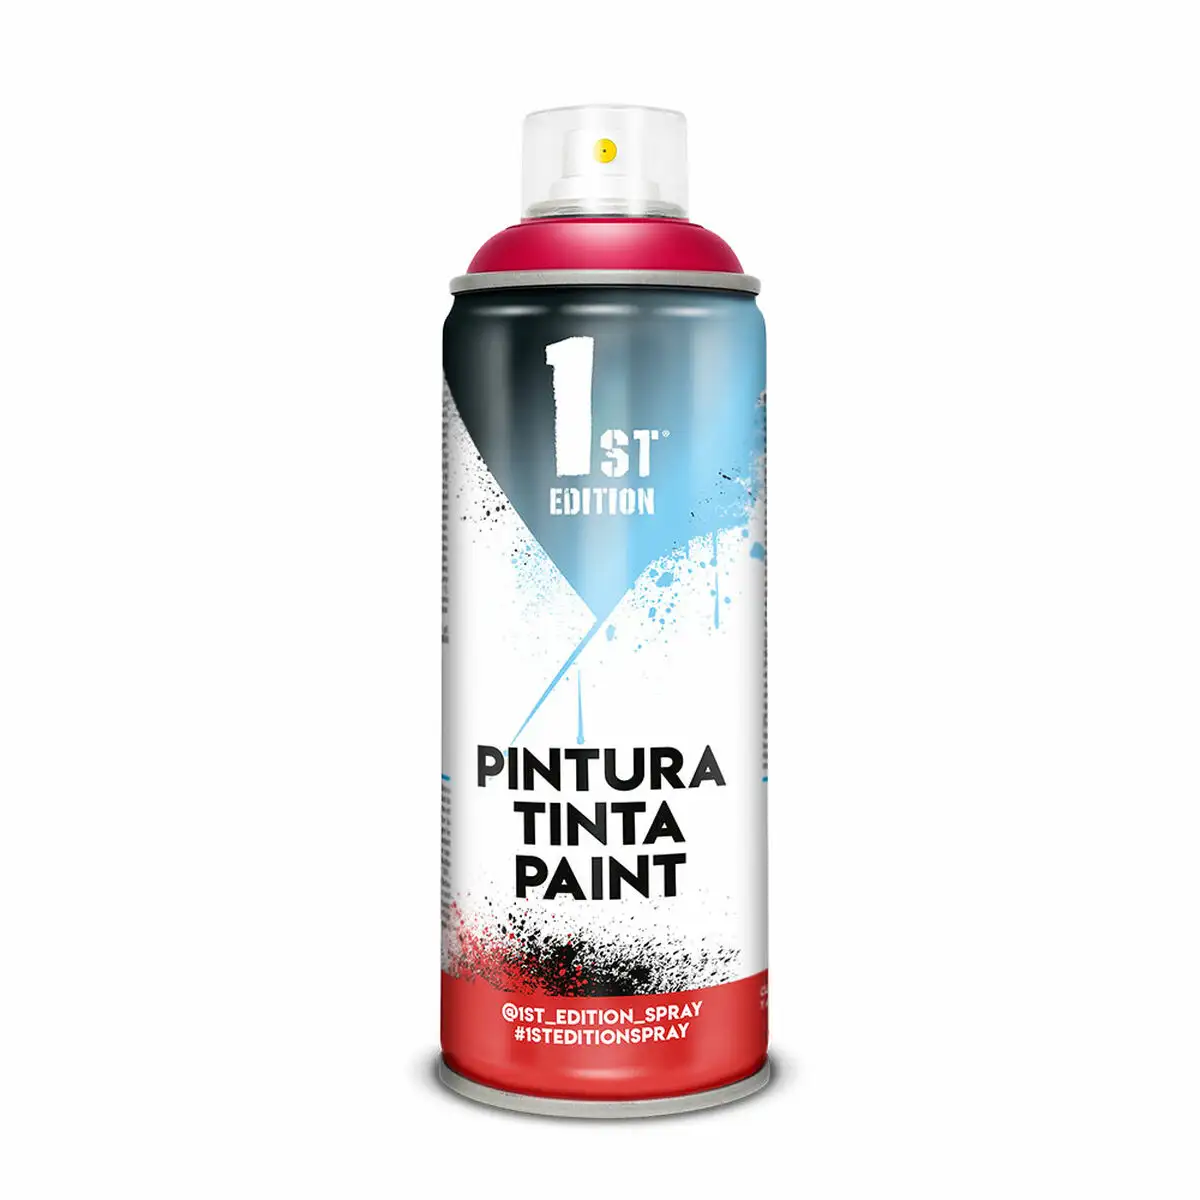 Peinture en spray 1st edition 646 rouge 300 ml_9629. DIAYTAR SENEGAL - Votre Destination pour un Shopping Réfléchi. Découvrez notre gamme variée et choisissez des produits qui correspondent à vos valeurs et à votre style de vie.